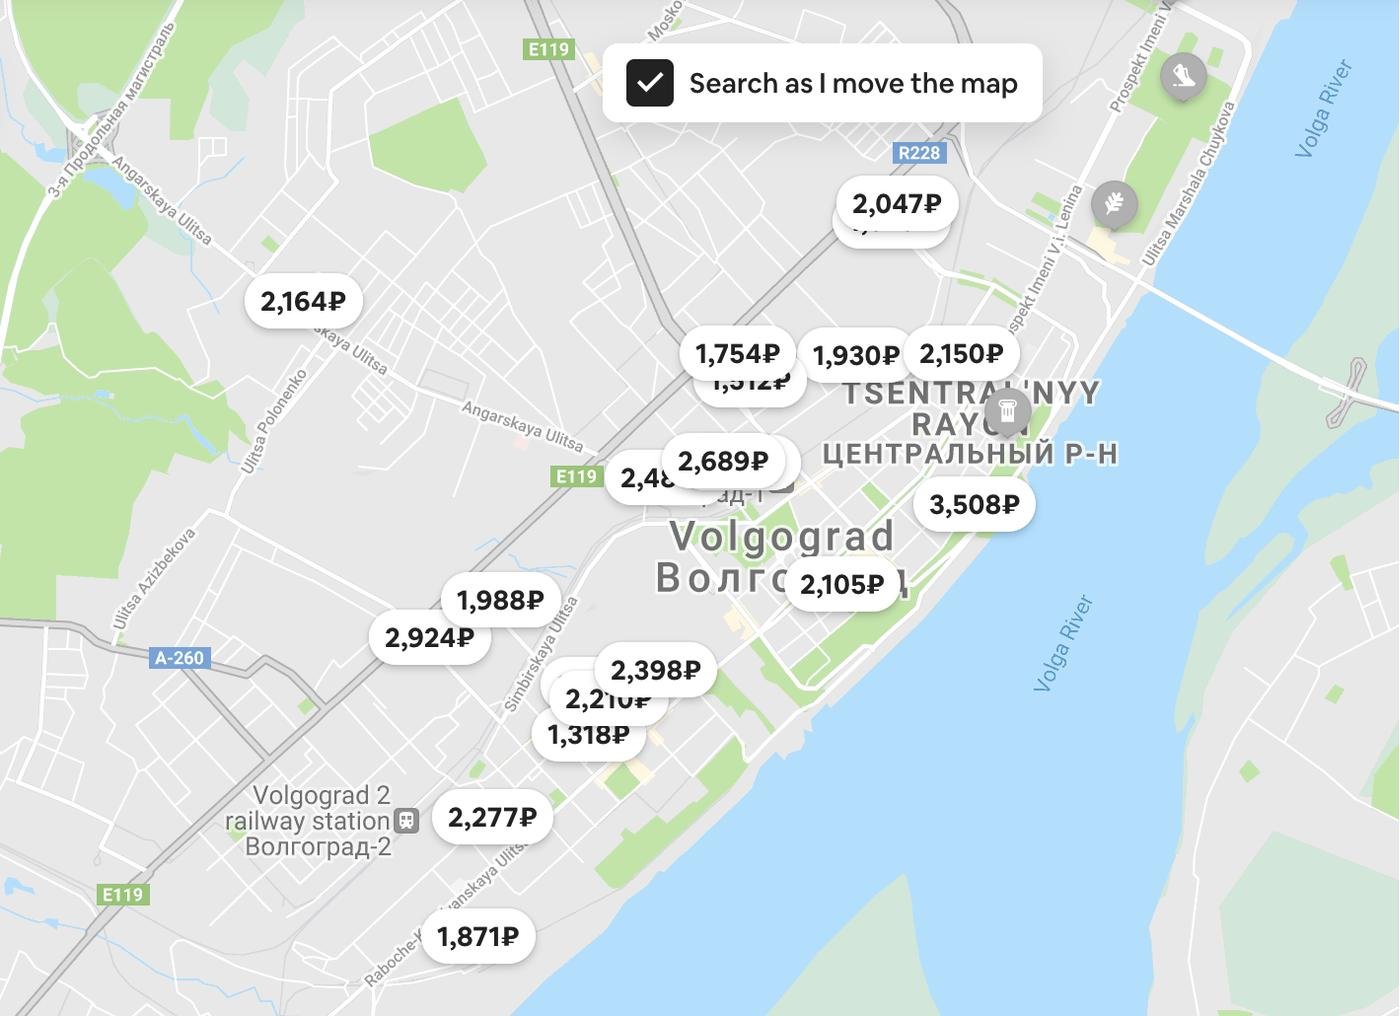 Стоимость дня жизни в Волгограде на эирбнб